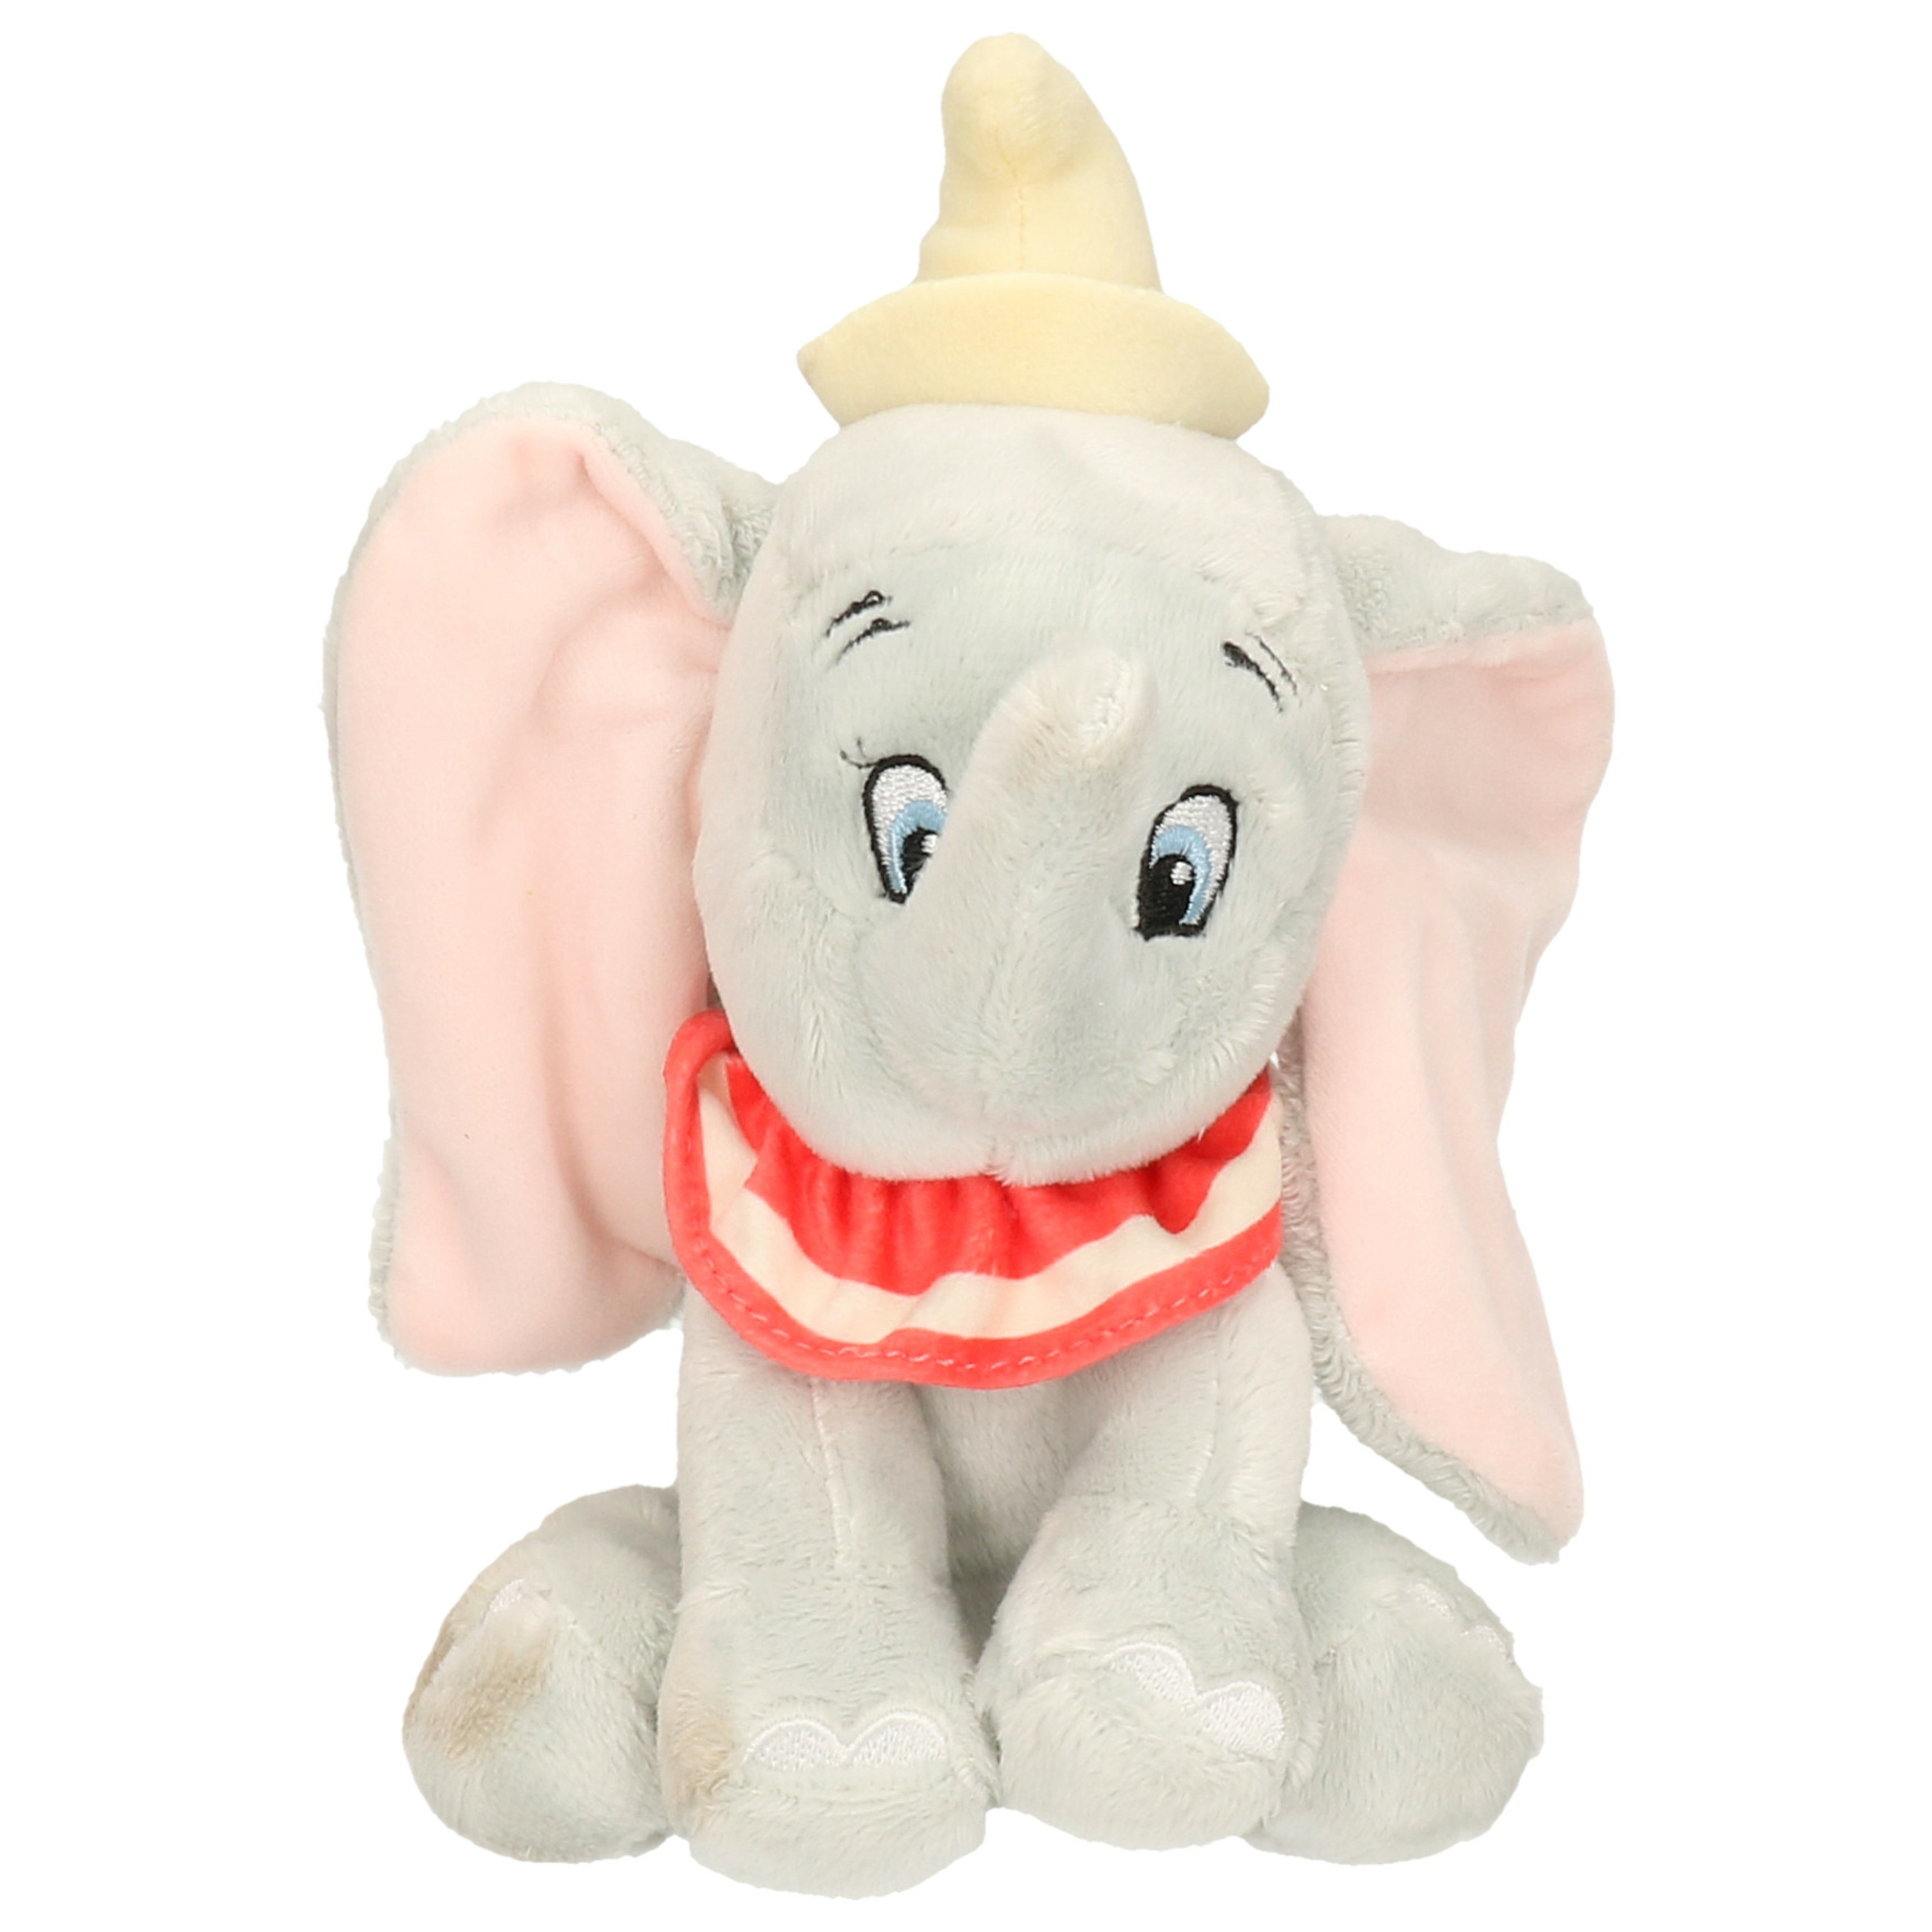 Knuffel Disney Dumbo/Dombo olifantje grijs 20 cm knuffels kopen